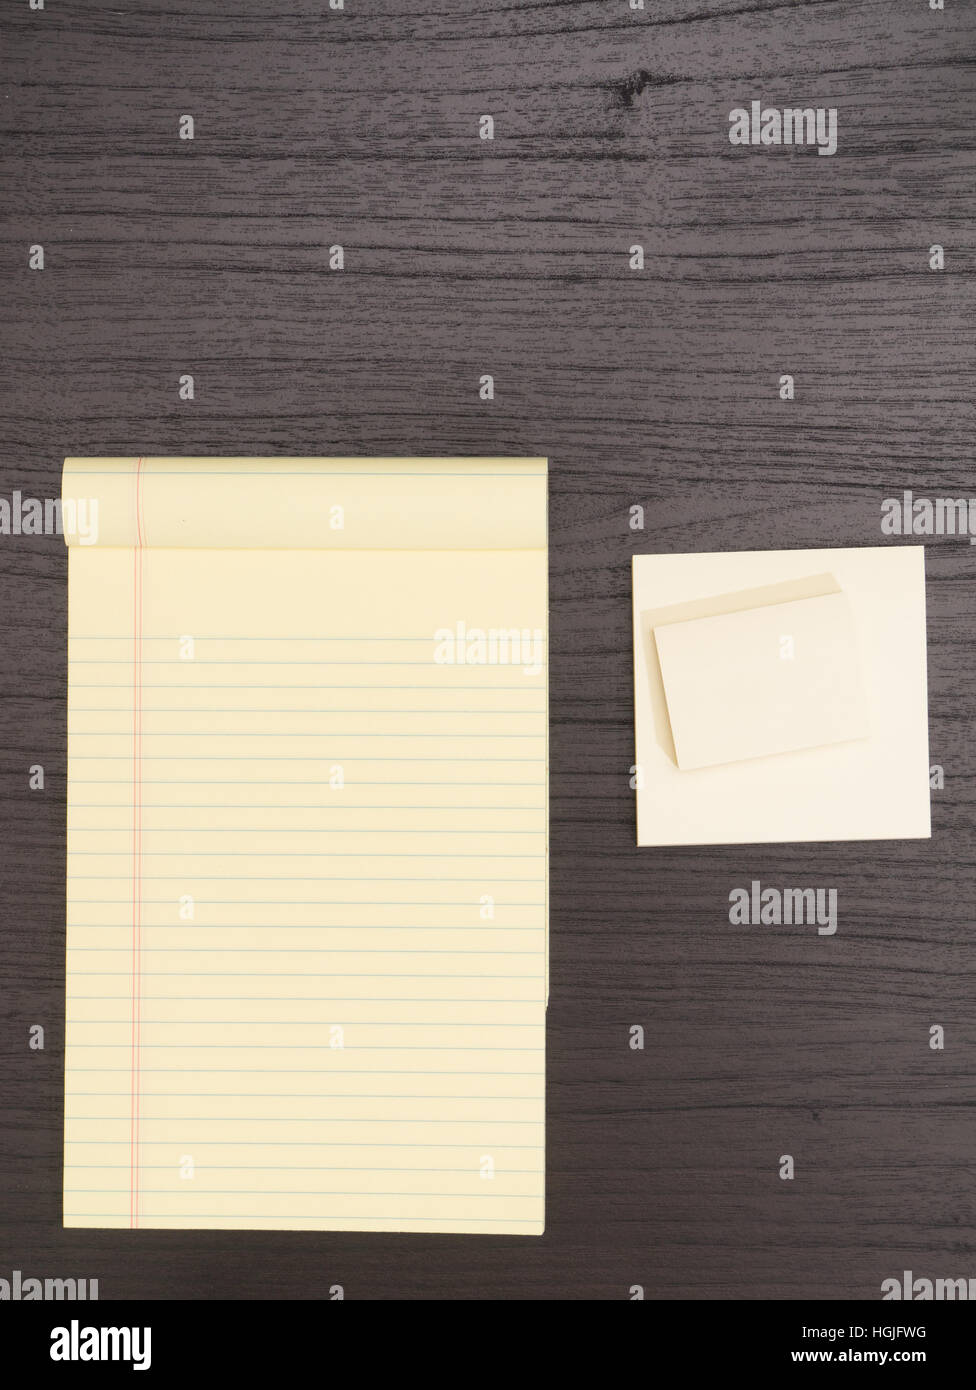 Desktop, Notepad,  Sticky Notes on Desk Stock Photo